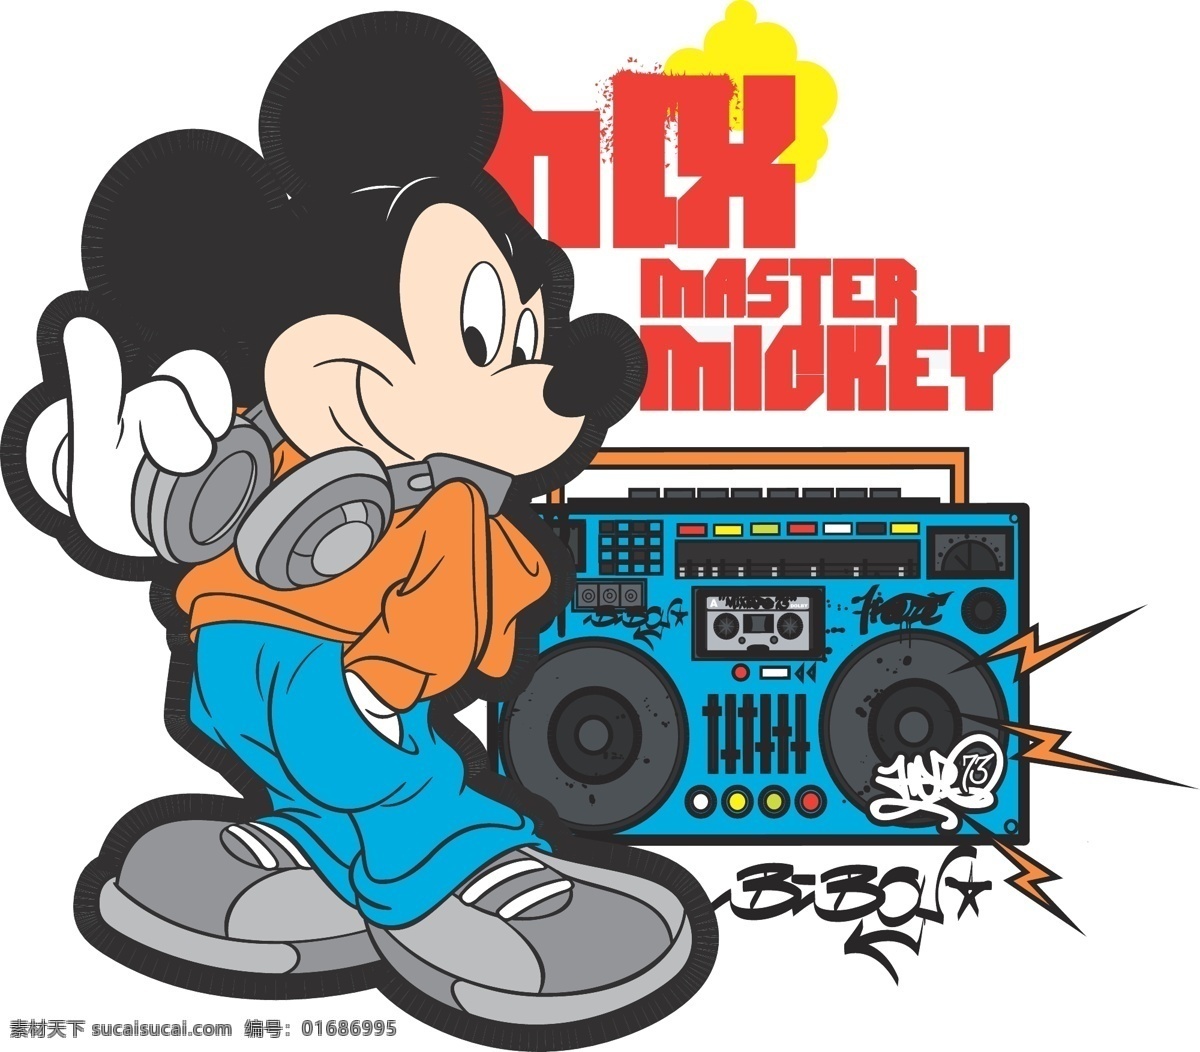 米老鼠 迪士尼动画 收音机 音乐素材 卡带机 迪士尼 动漫动画 动漫人物